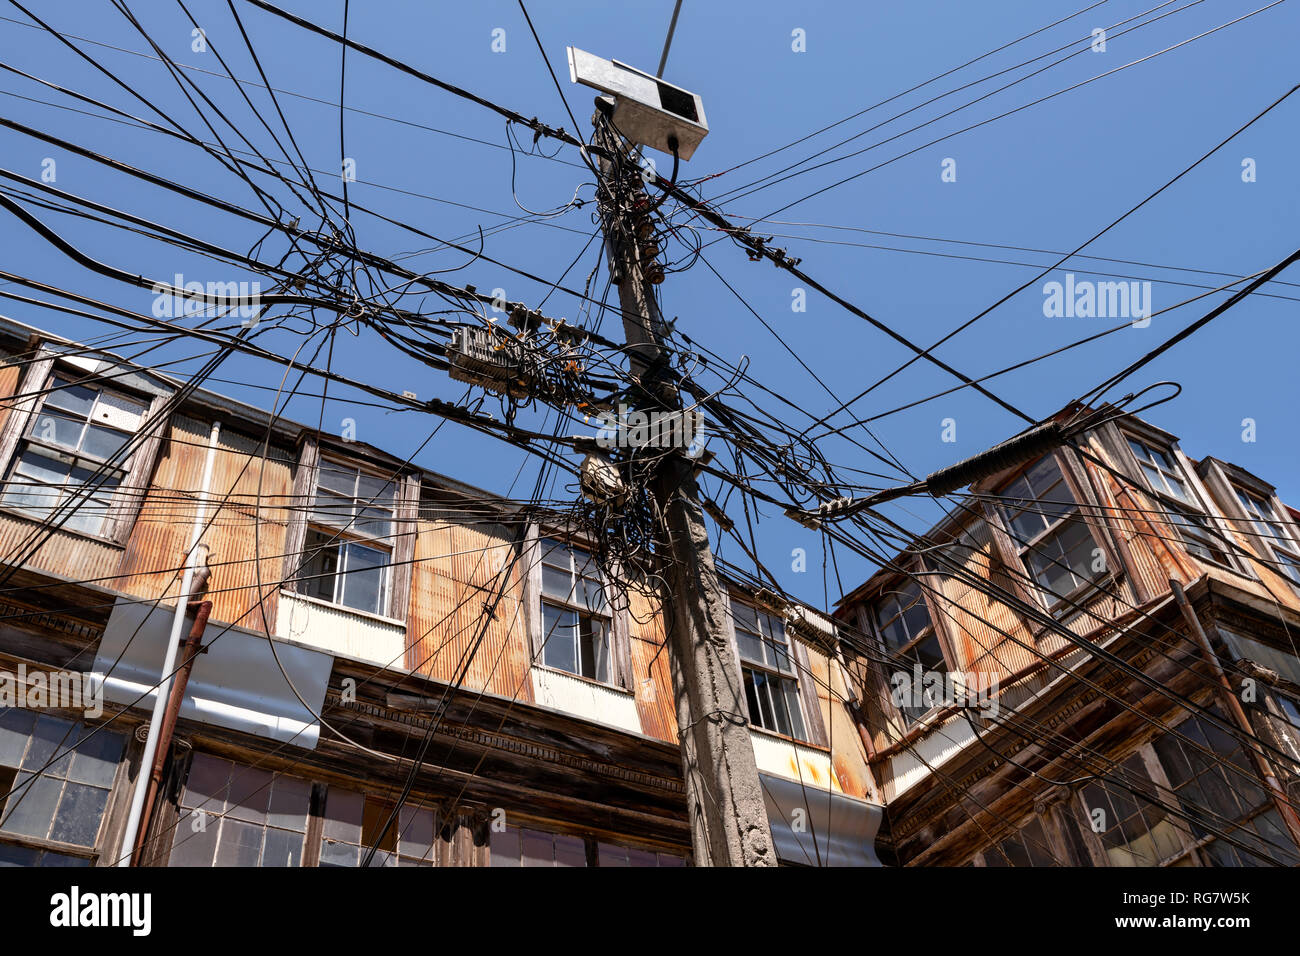 una-aparentemente-enmaranados-y-desorganizada-coleccion-de-cables-en-una-calle-de-valparaiso-chile-rg7w5k.jpg